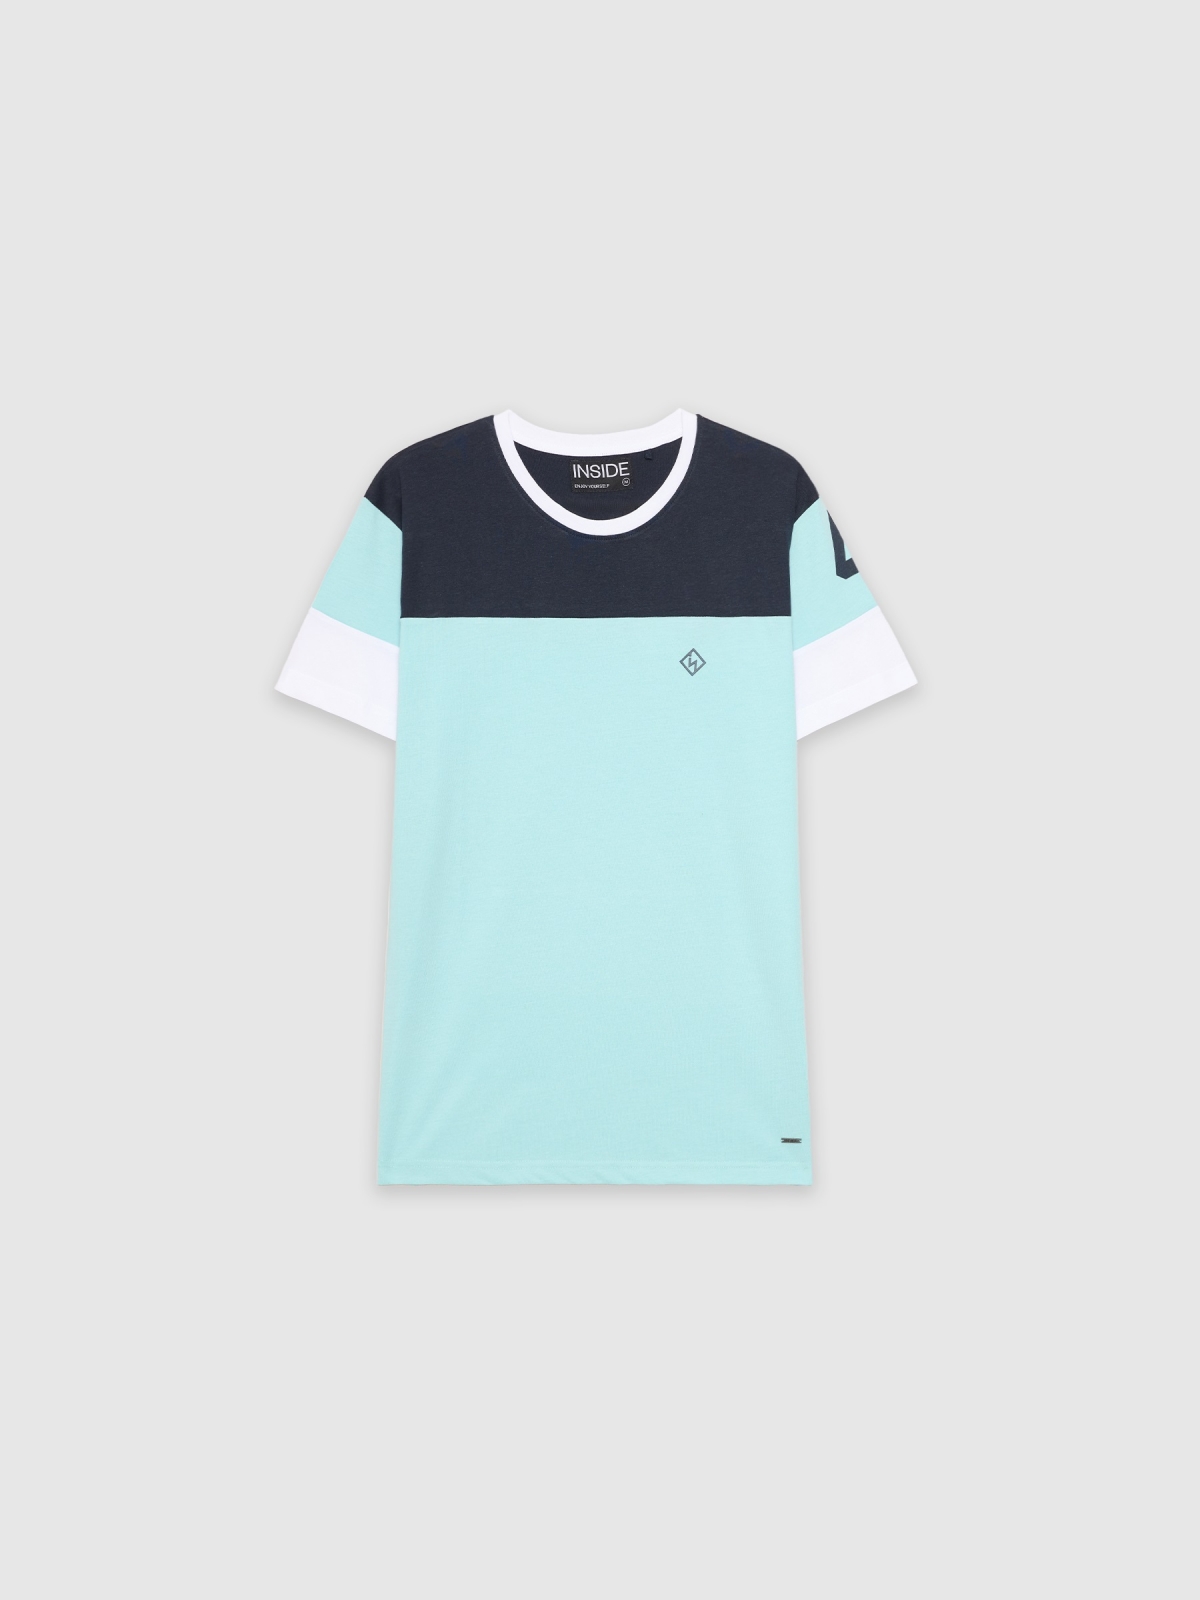  T-shirt desportiva com textura azul claro